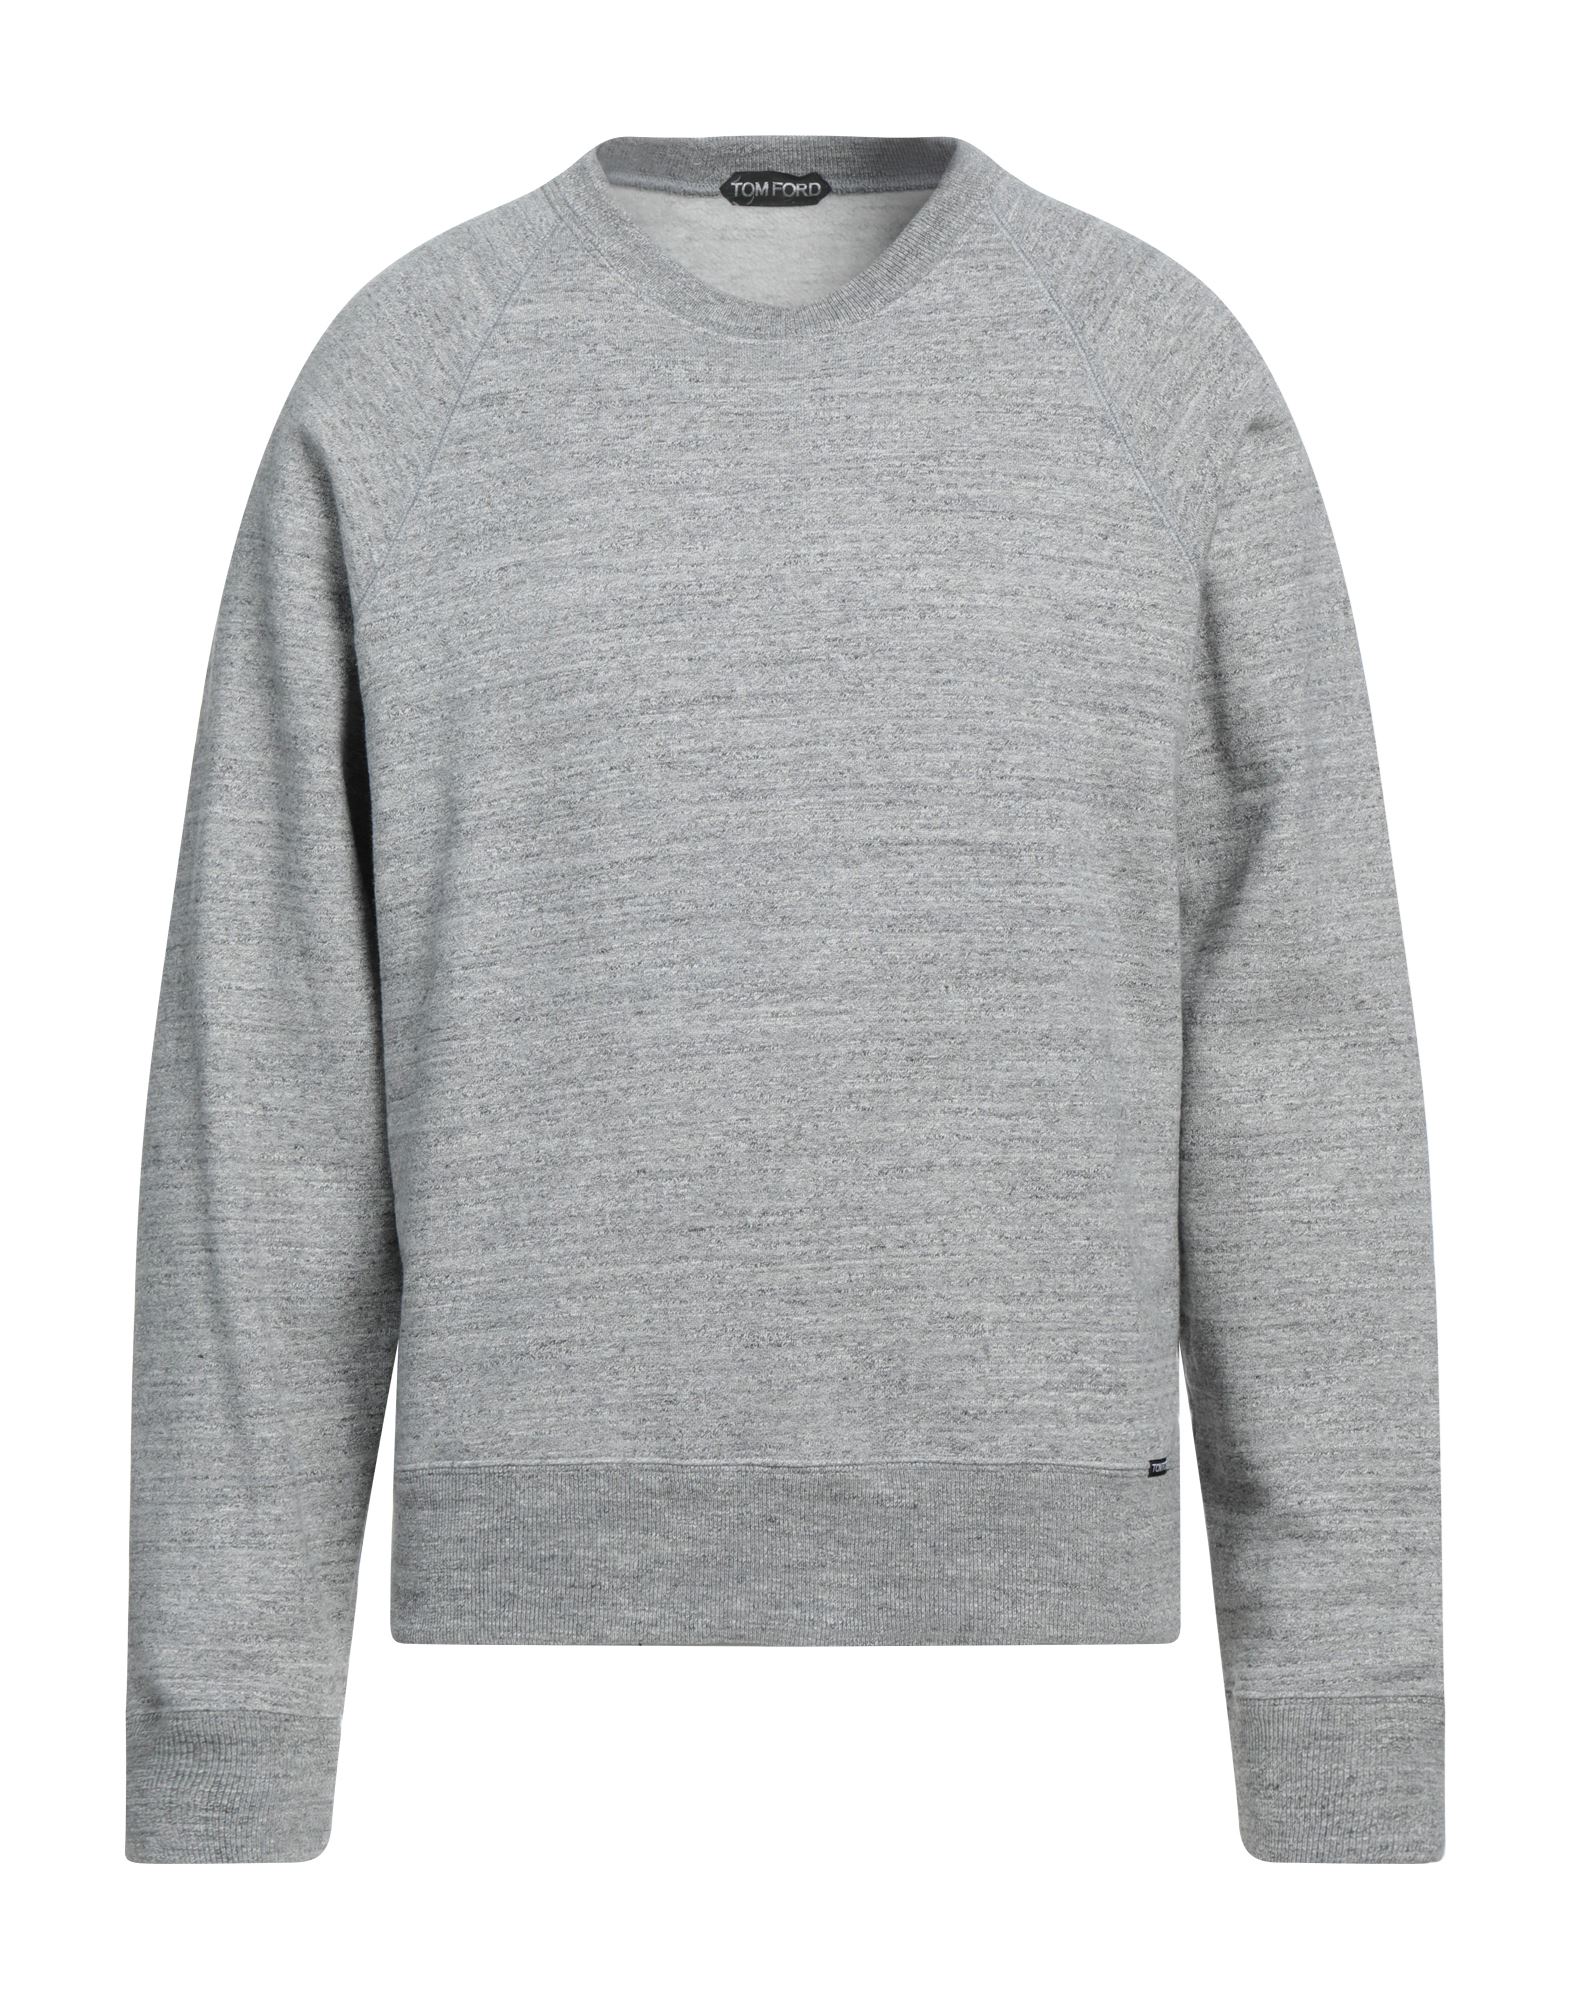 Tom Ford Sweatshirts In Grey